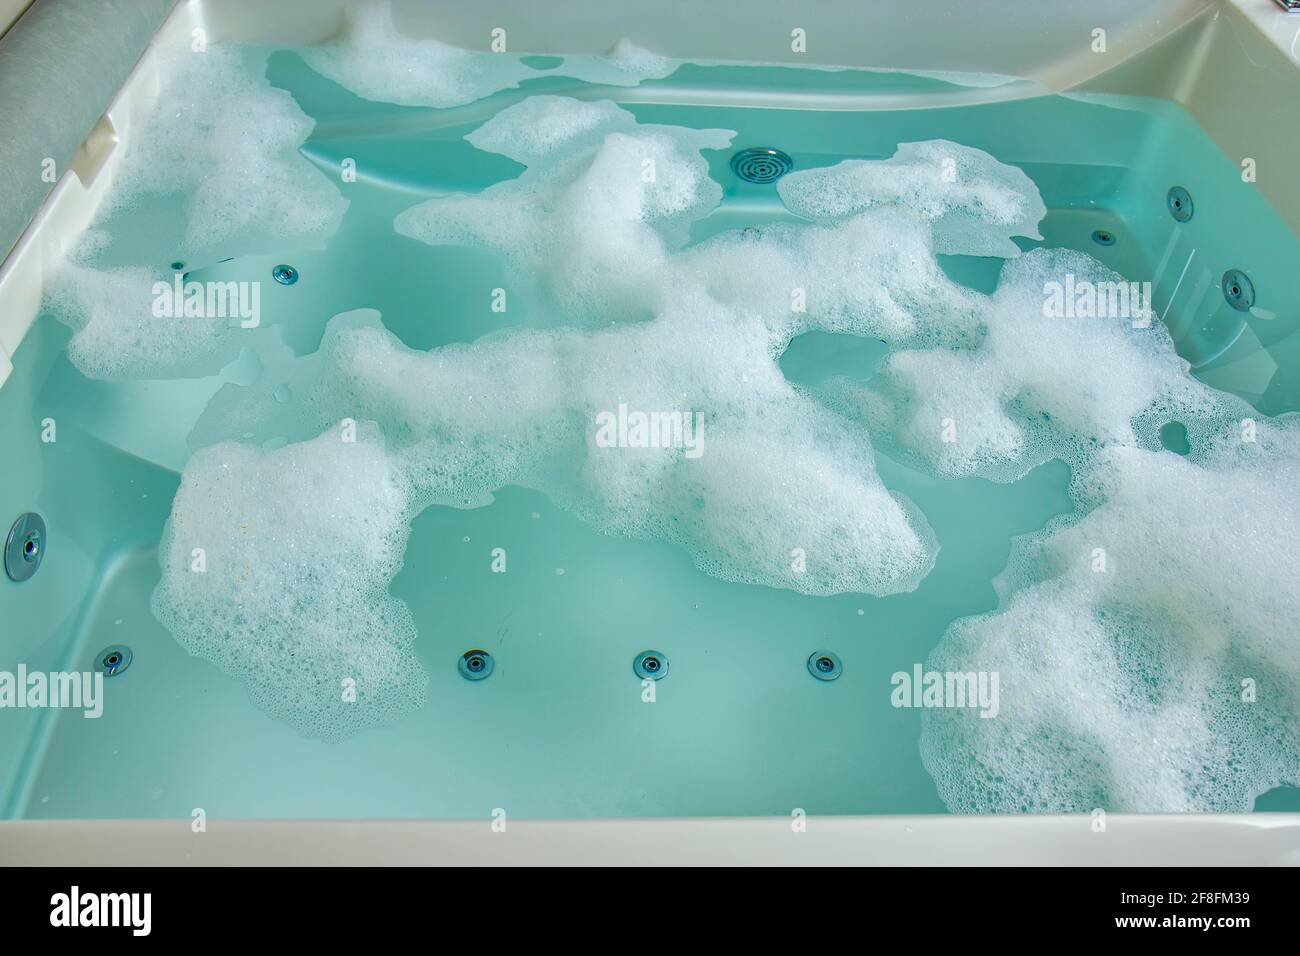 Schiuma nella vasca idromassaggio Foto stock - Alamy